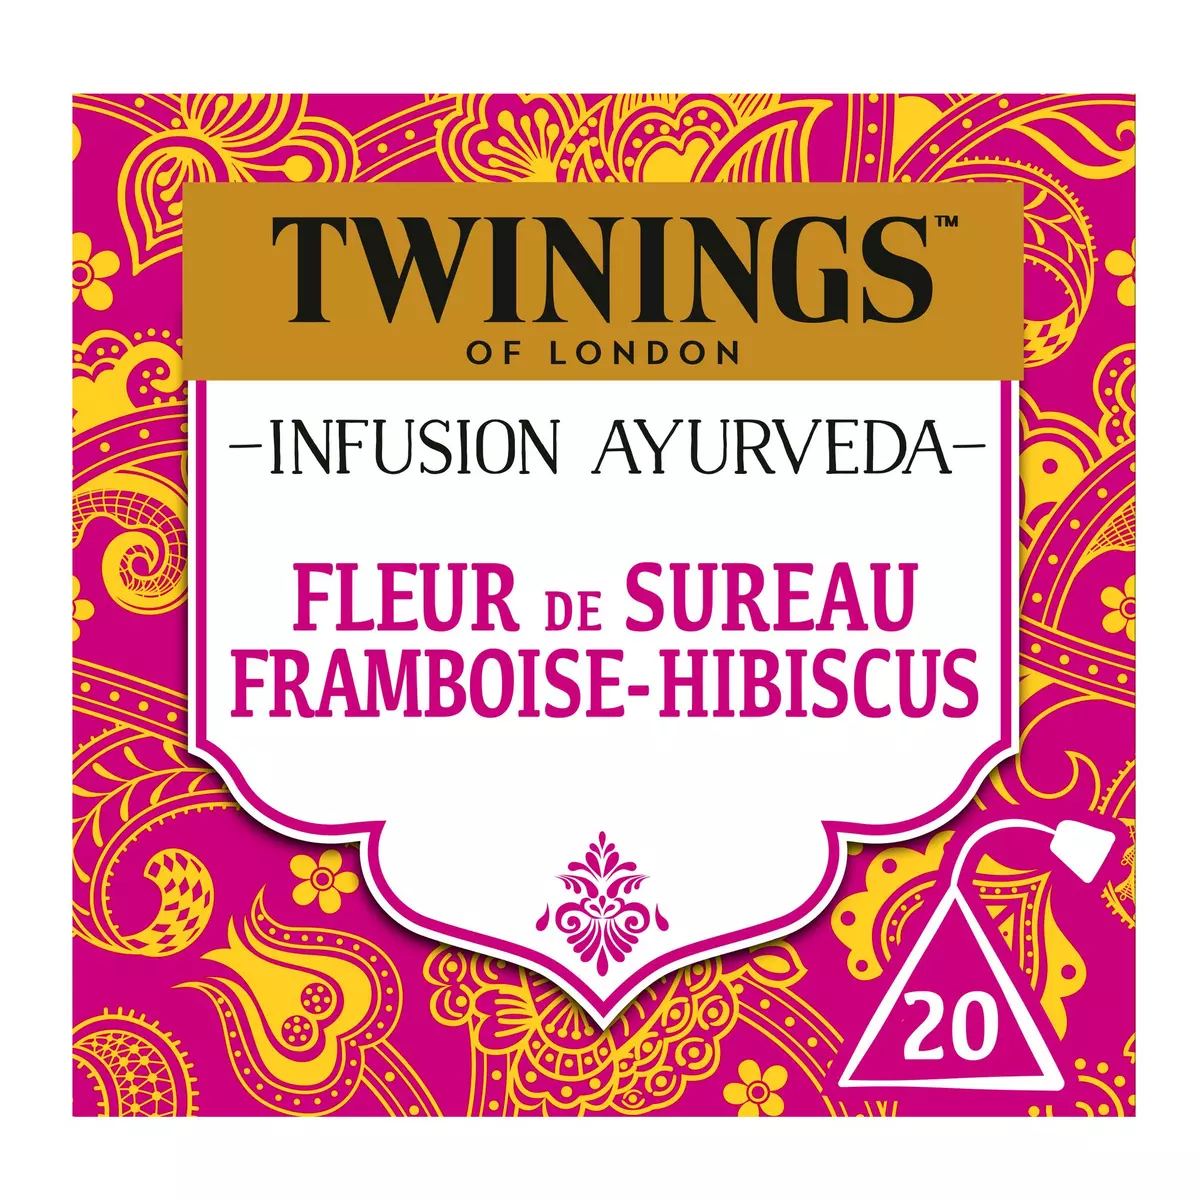 TWININGS Infusion ayurveda fleur de sureau framboise et hibiscus 20 sachets 36g